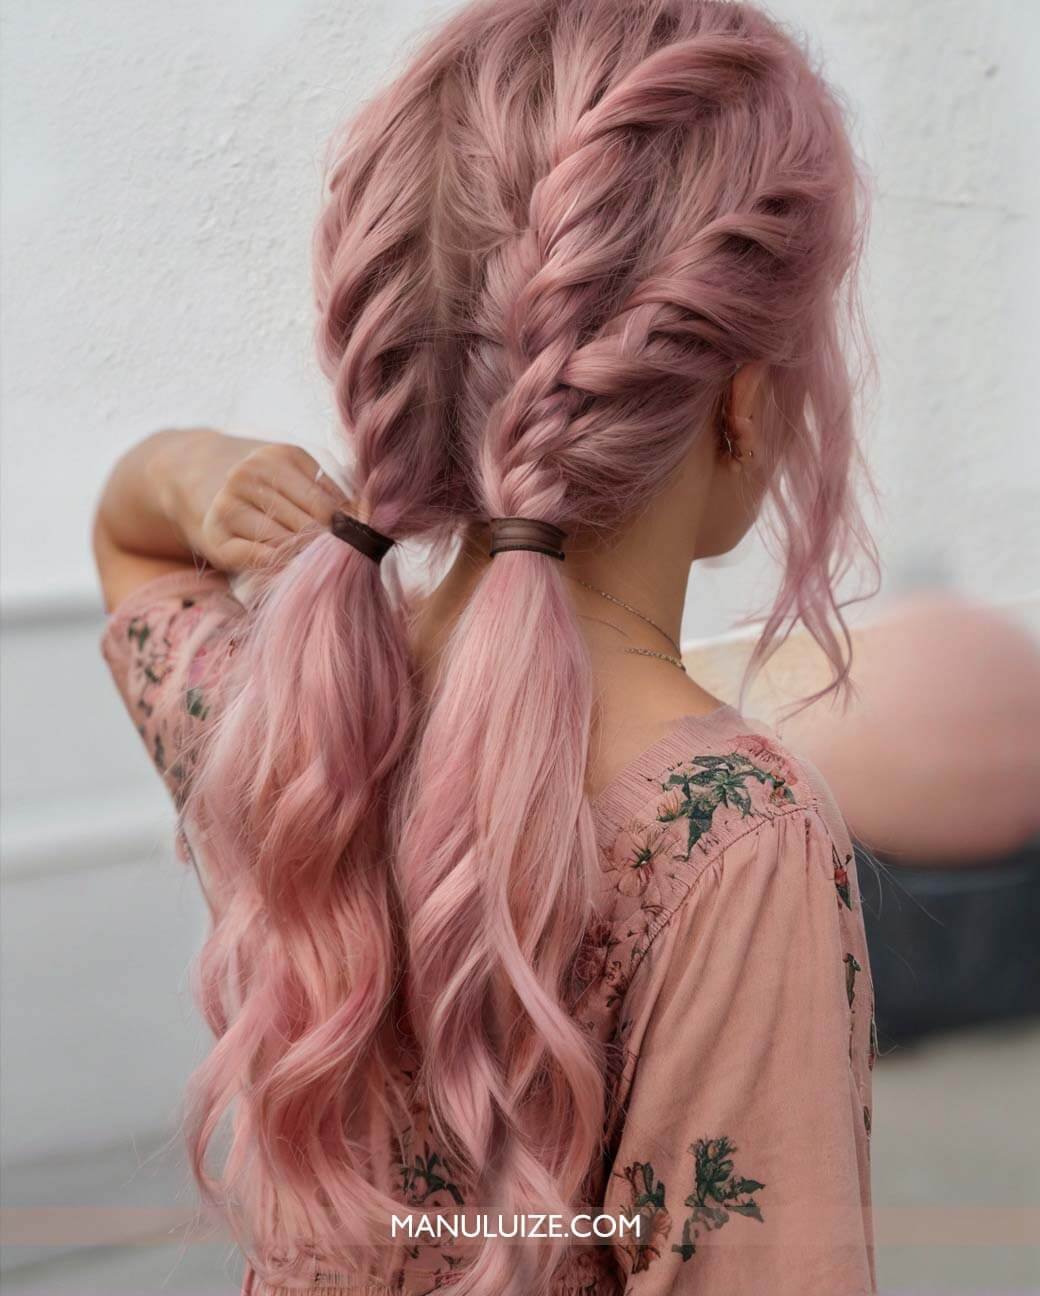 Penteado com tranças em cabelo rosa